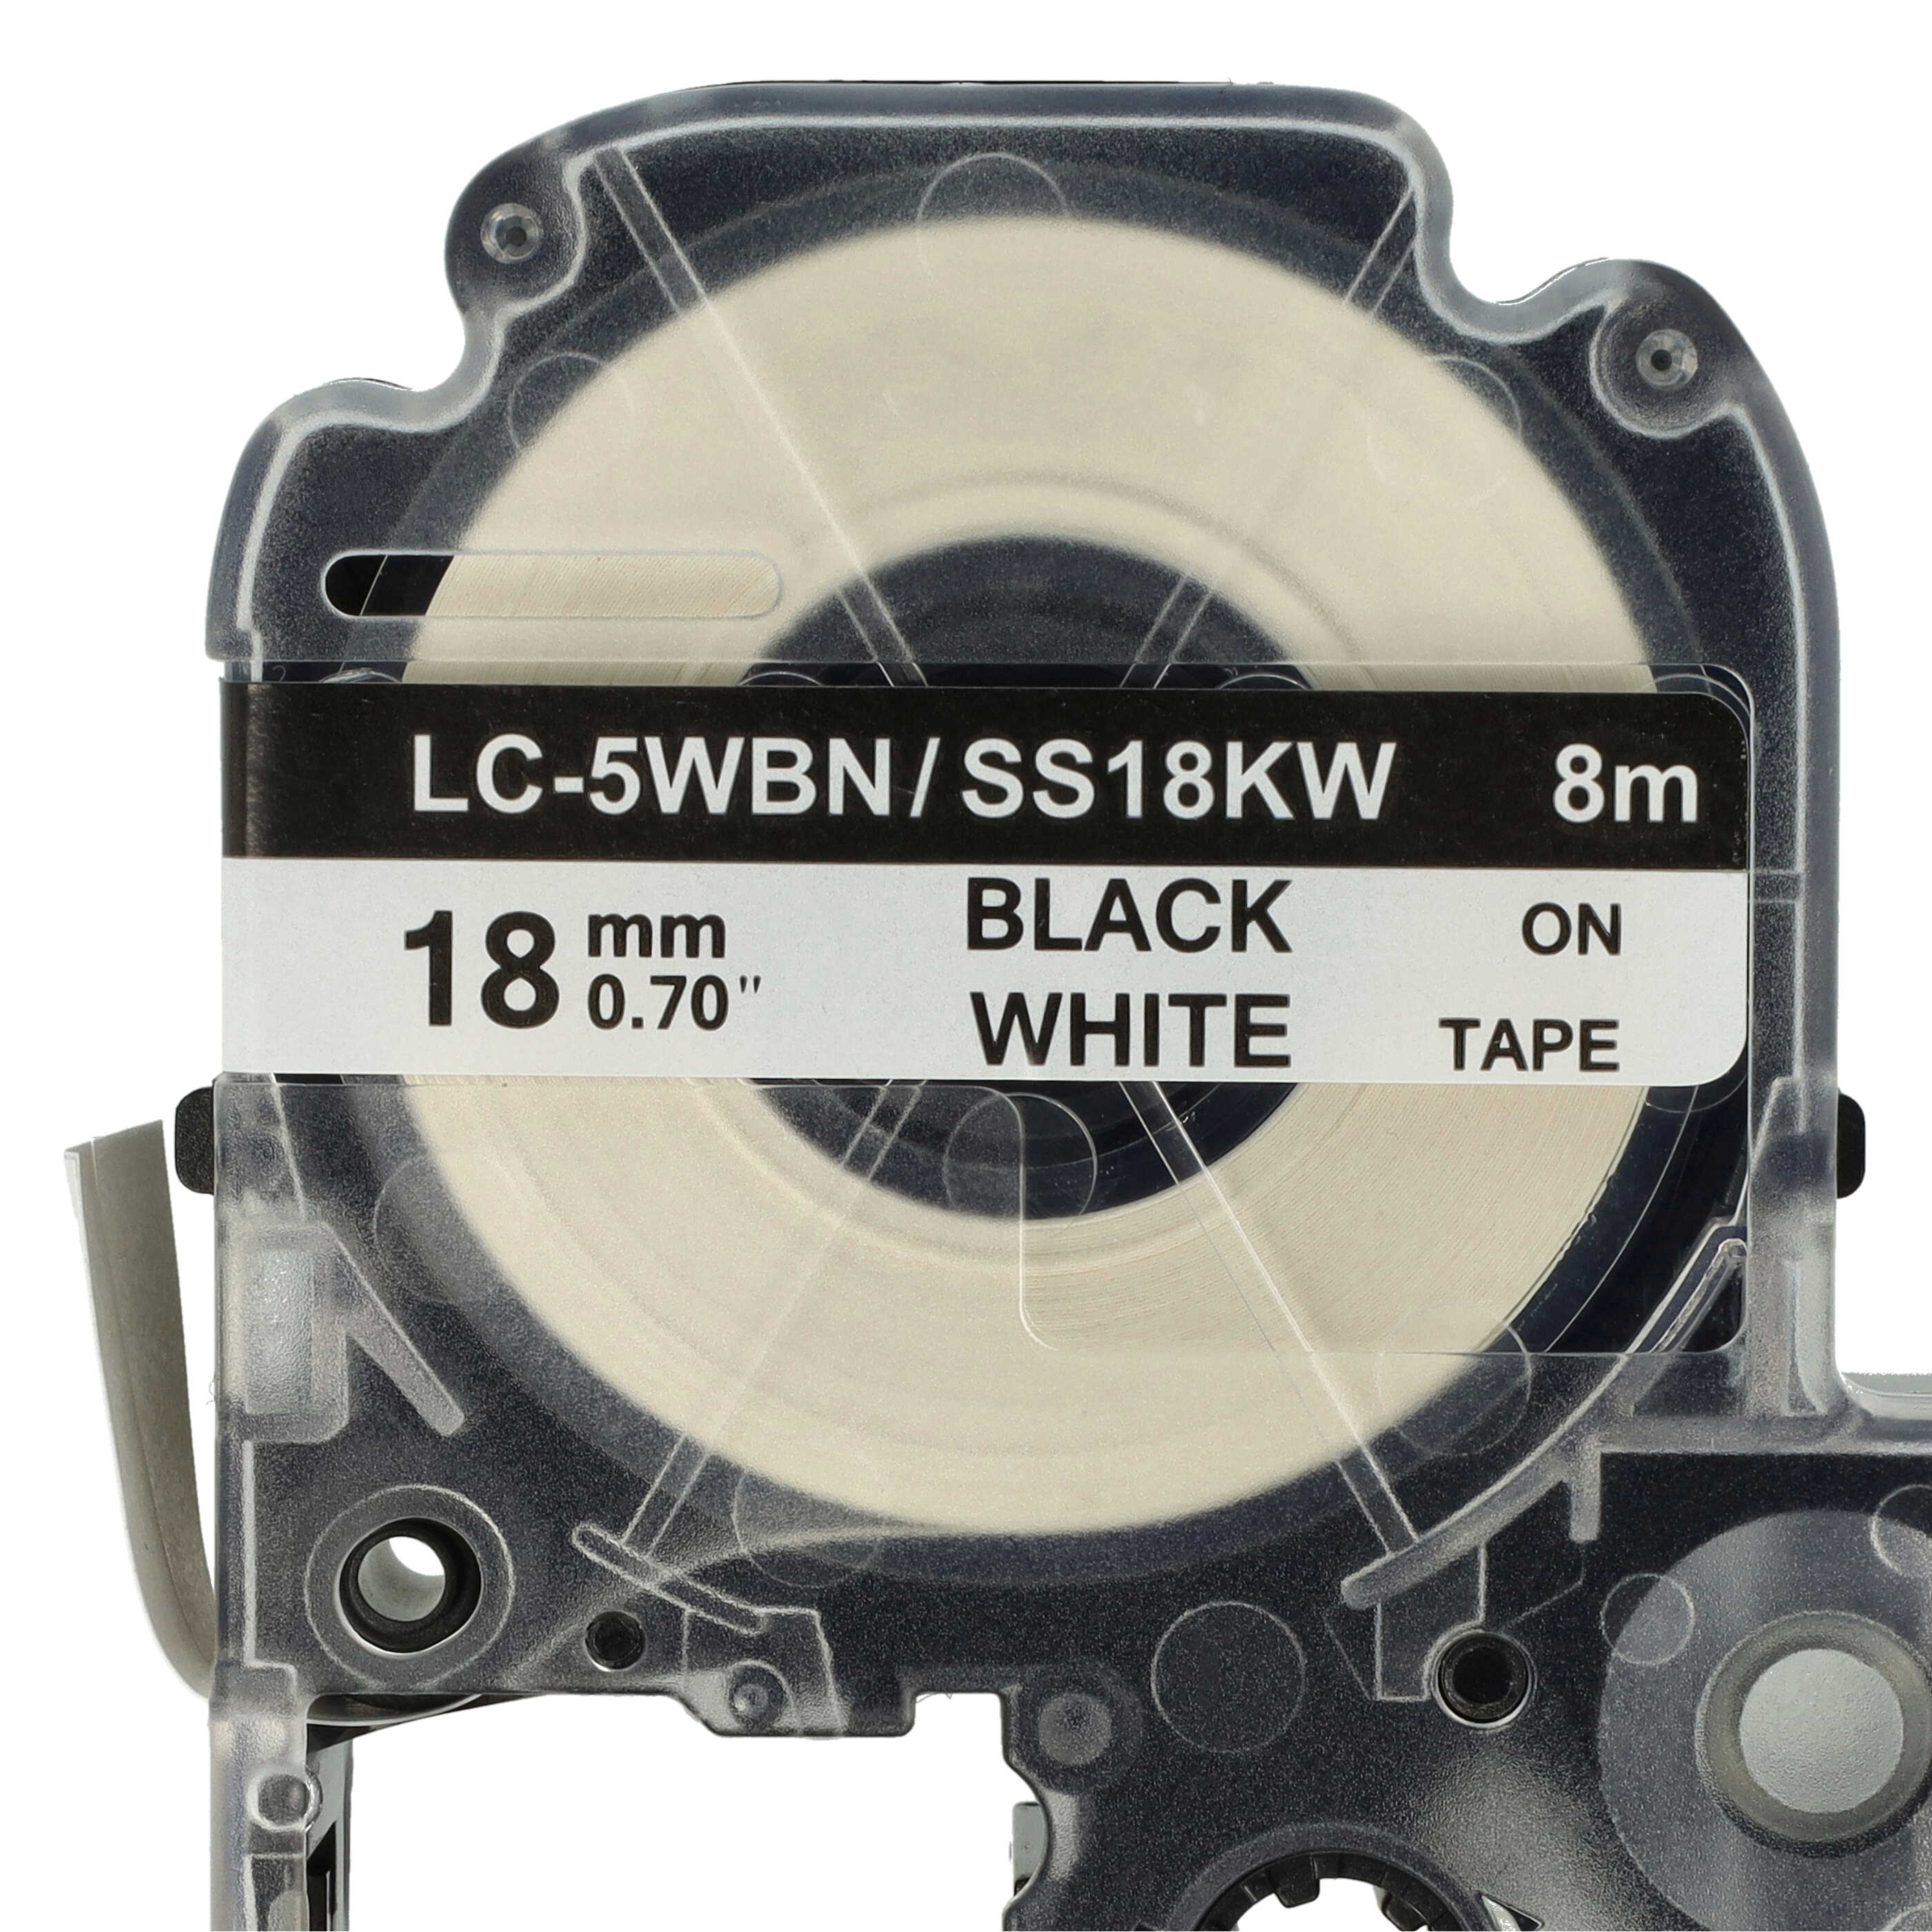 Cassetta nastro sostituisce Epson LC-5WBN per etichettatrice Epson 18mm nero su bianco